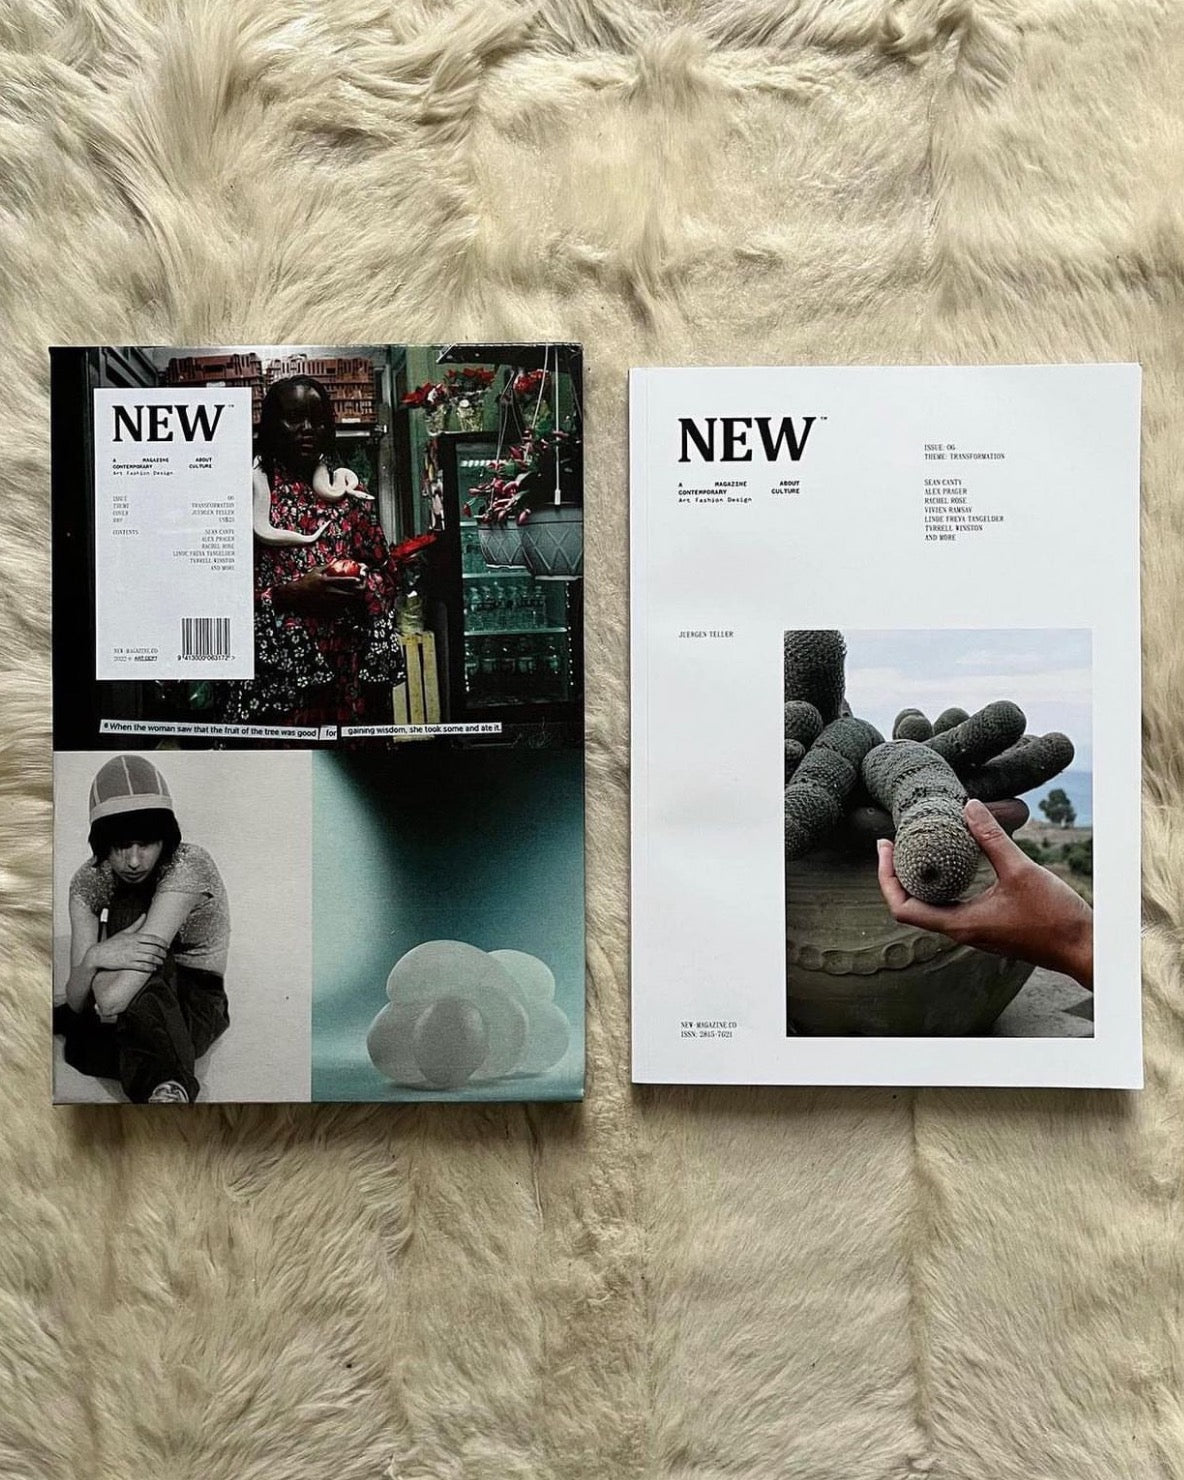 New Magazine - That Looks